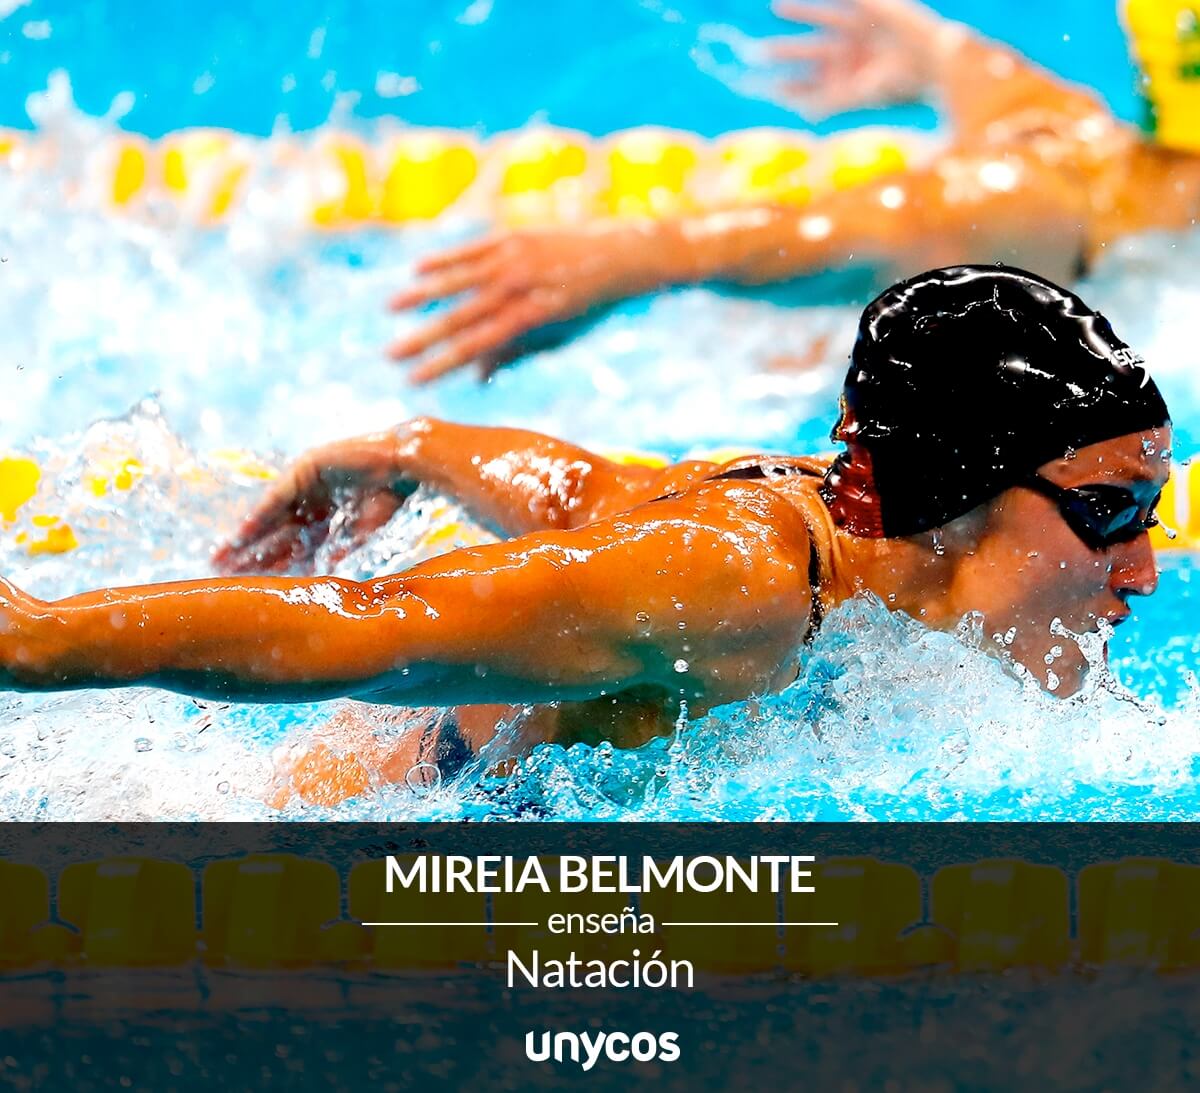 Aprender a nadar con Mireia Belmonte es posible a través de Unycos.